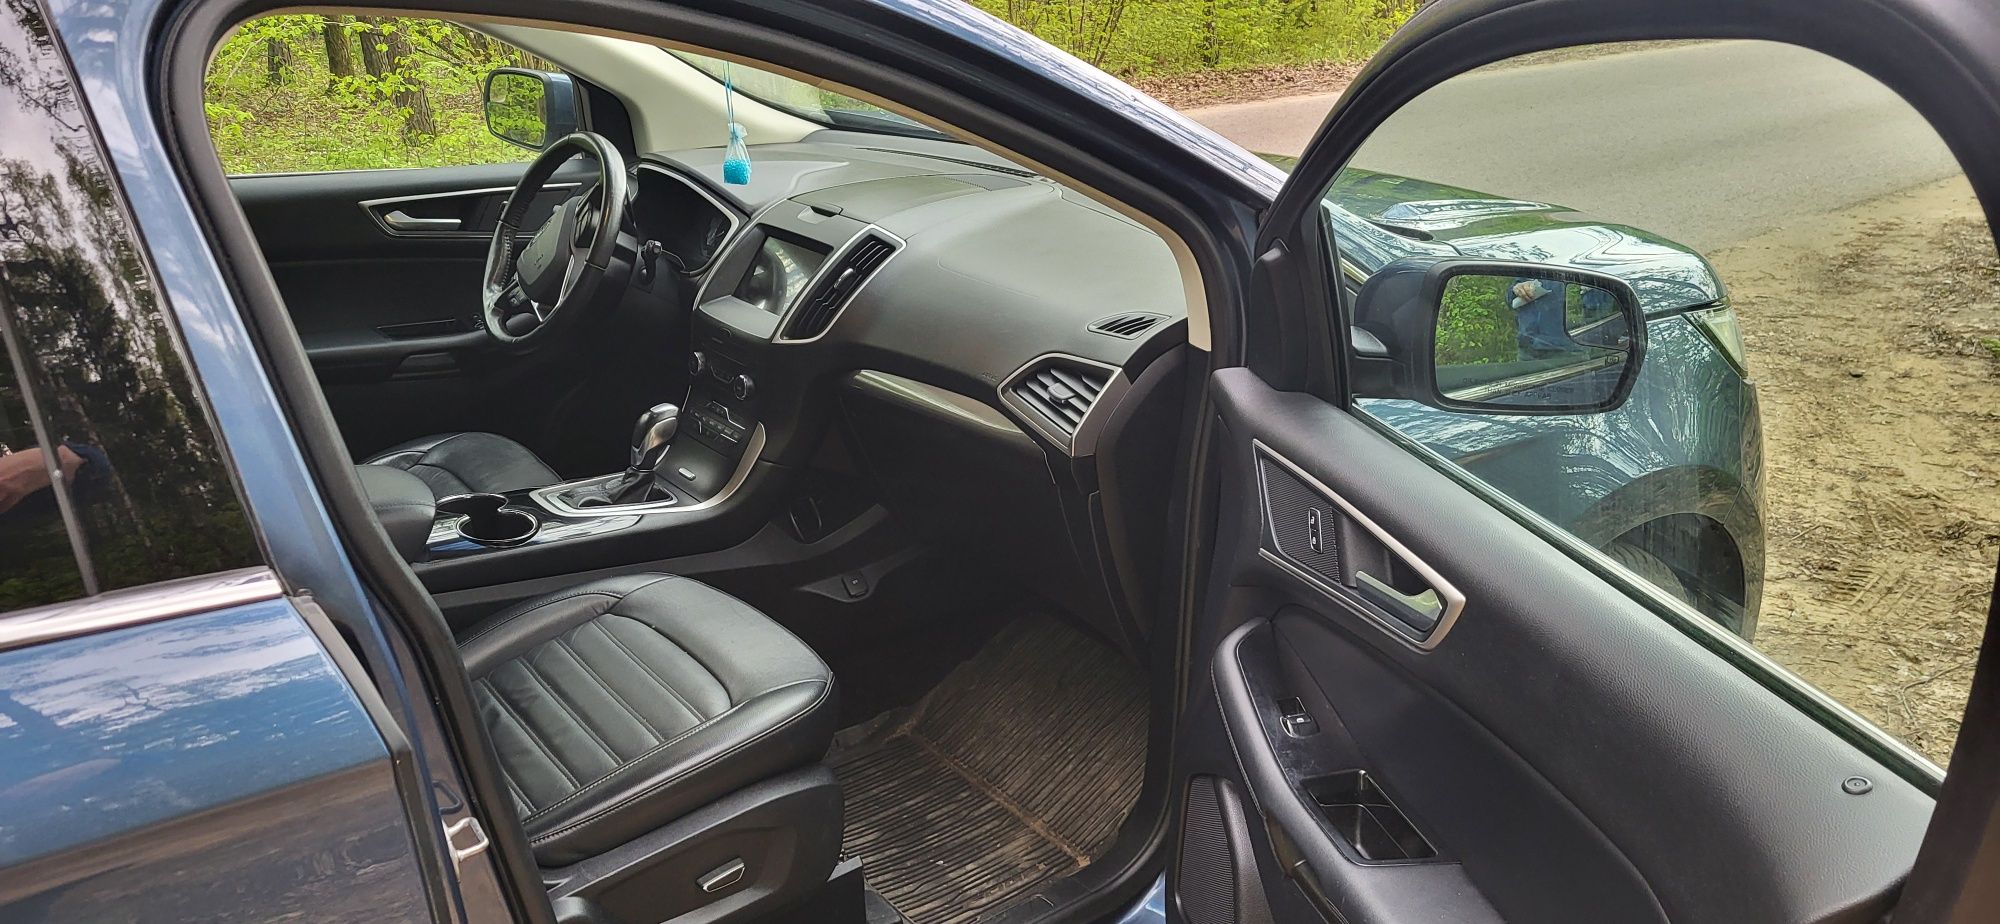 Ford Edge 2018 3,5L  + LPG AWD bogata wersja  jak Titanium